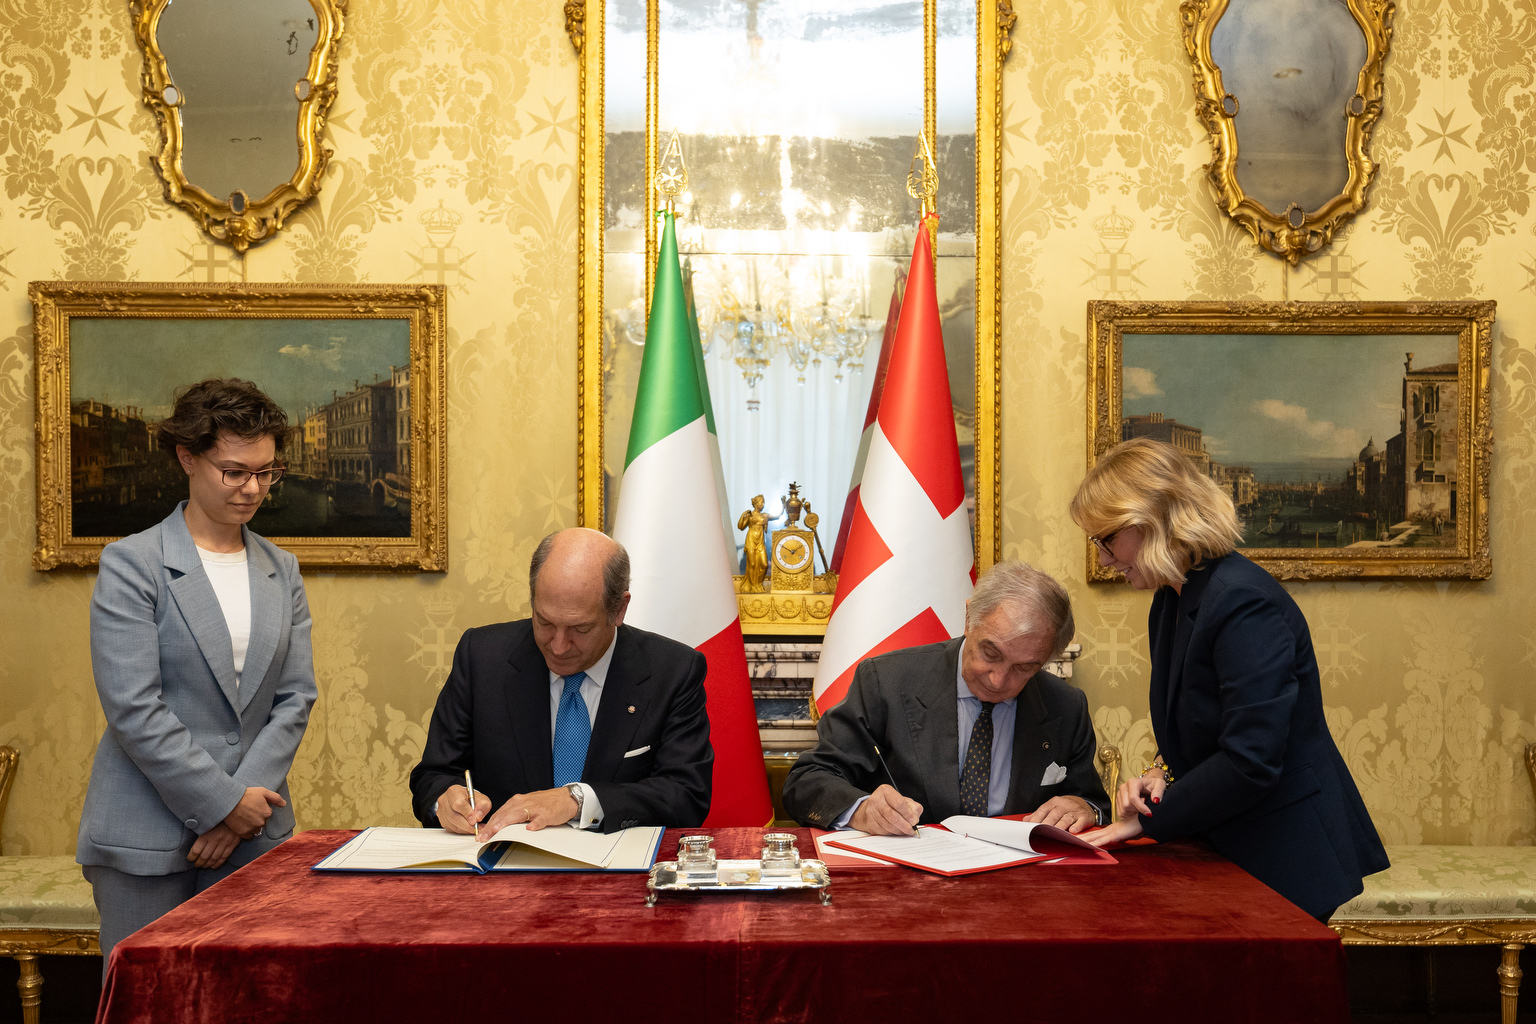 Unterzeichnung des Abkommens mit der Italienischen Republik für das Italienische Hilfskorps des Malteserordens